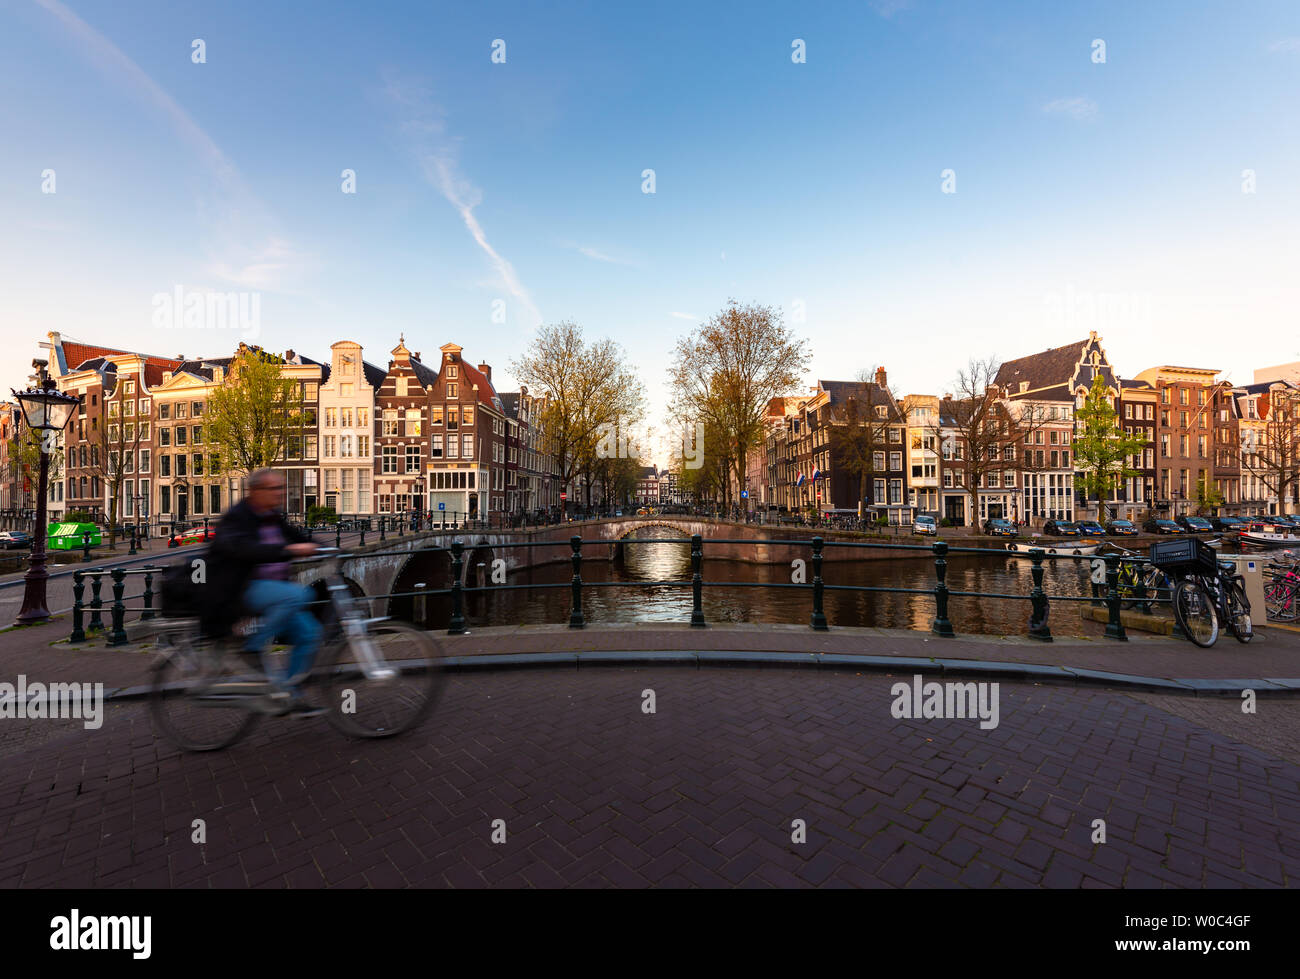 Amsterdam-Menschen auf Fahrrädern im historischen Teil in Amsterdam, Niederlande. Stockfoto